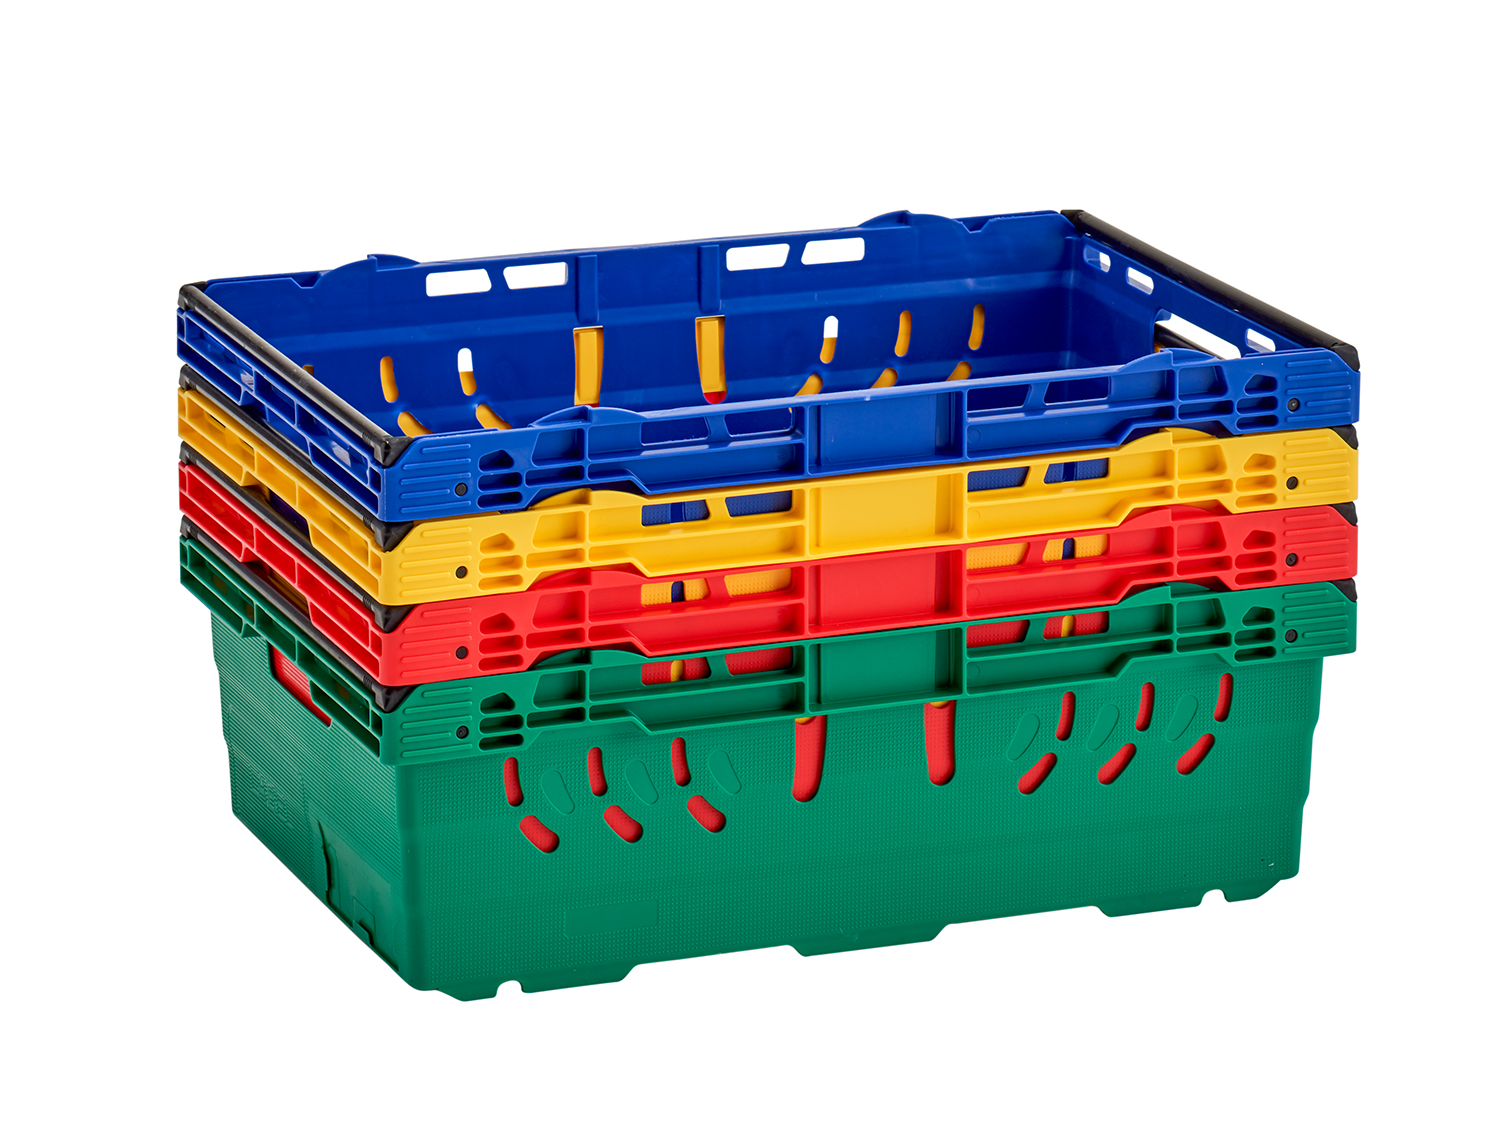 Bale Arm Plastic Crates